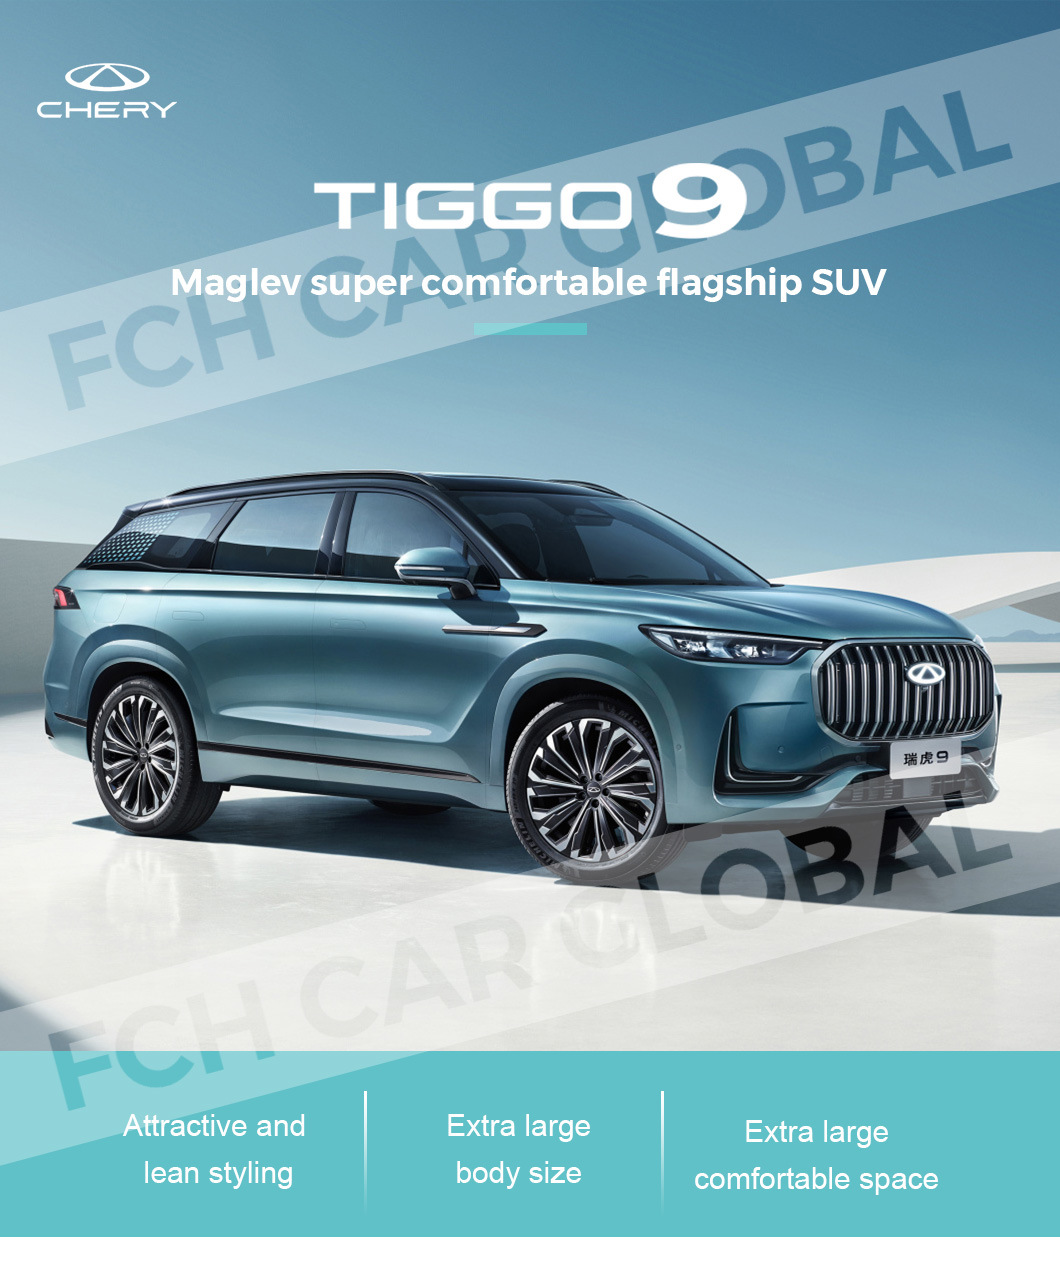 2023 Chery Tiggo 9 2.0t 2WD/4WD SUV New Listing Chinese Gasoline Car in Stock 2022 Version Chery Tiggo 9